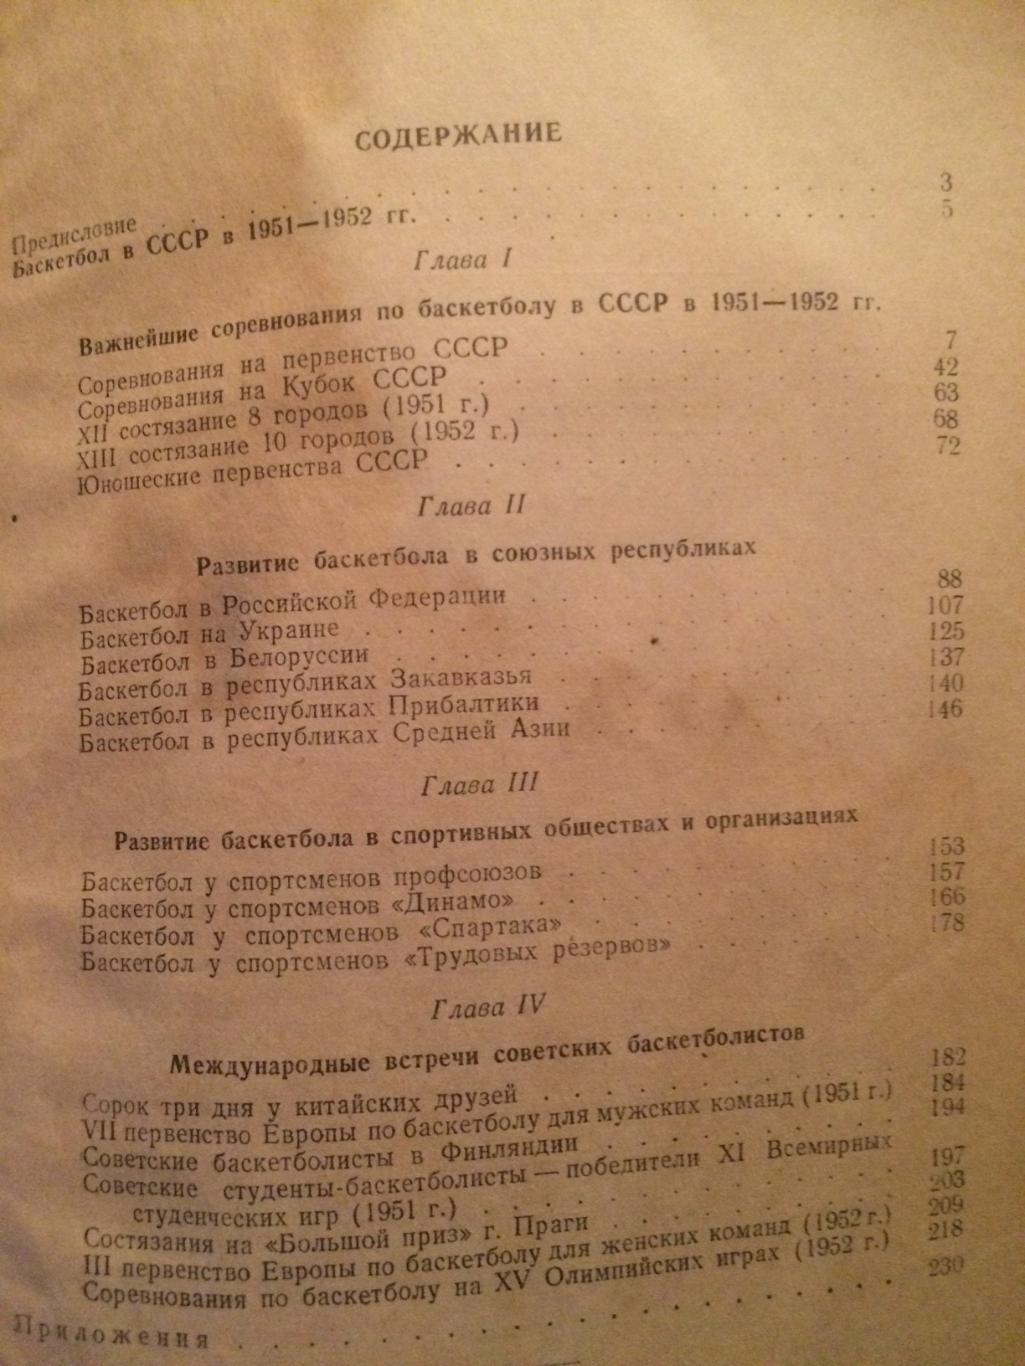 Баскетбол в СССР. Справочник за 1951-52 г.г. 1